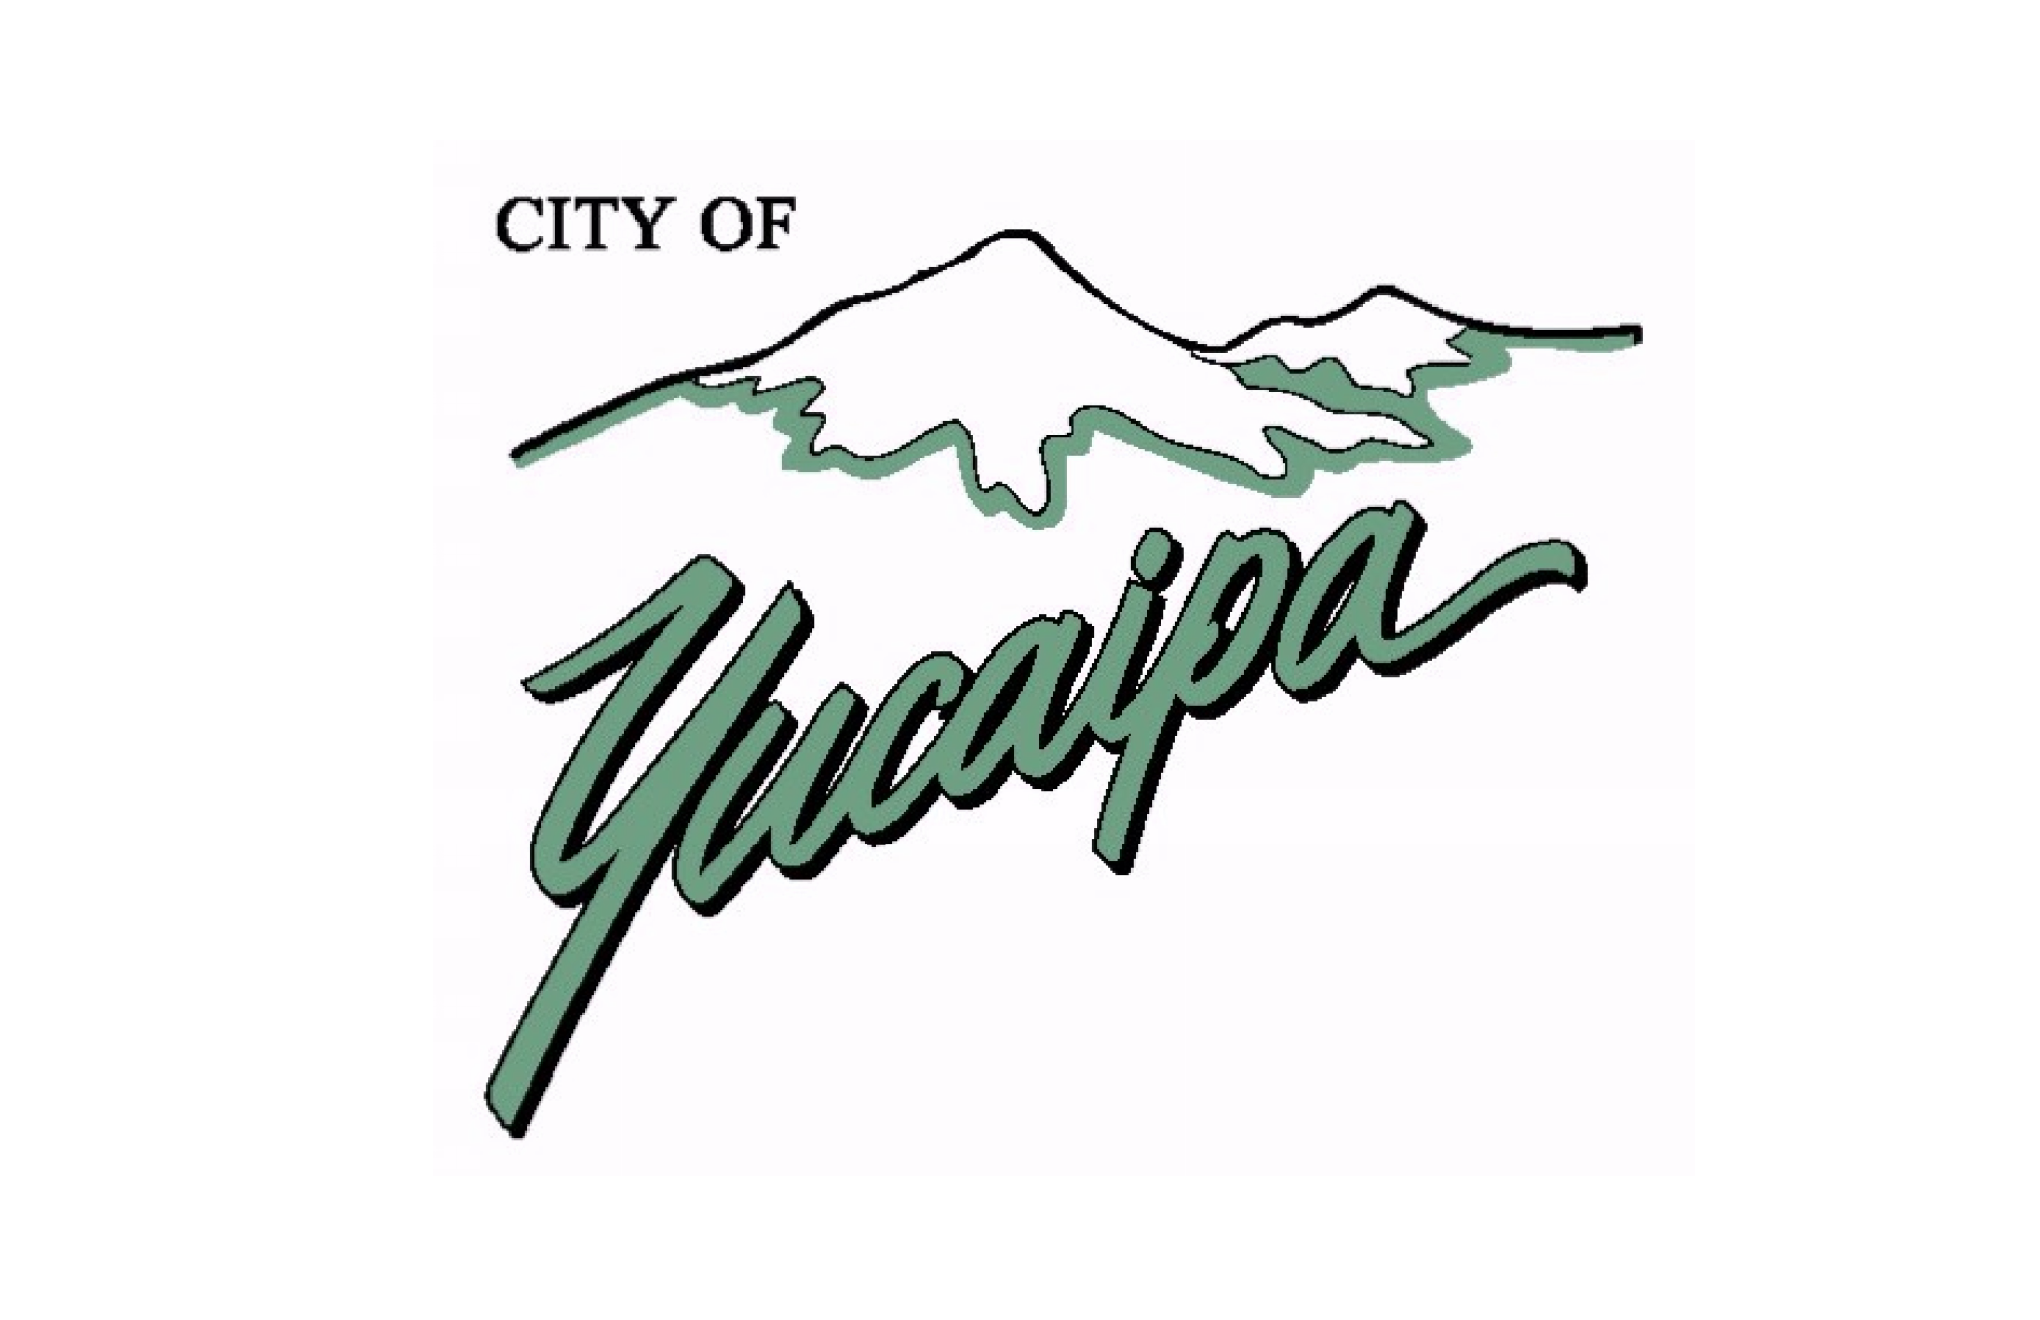 City of Yucaipa logo